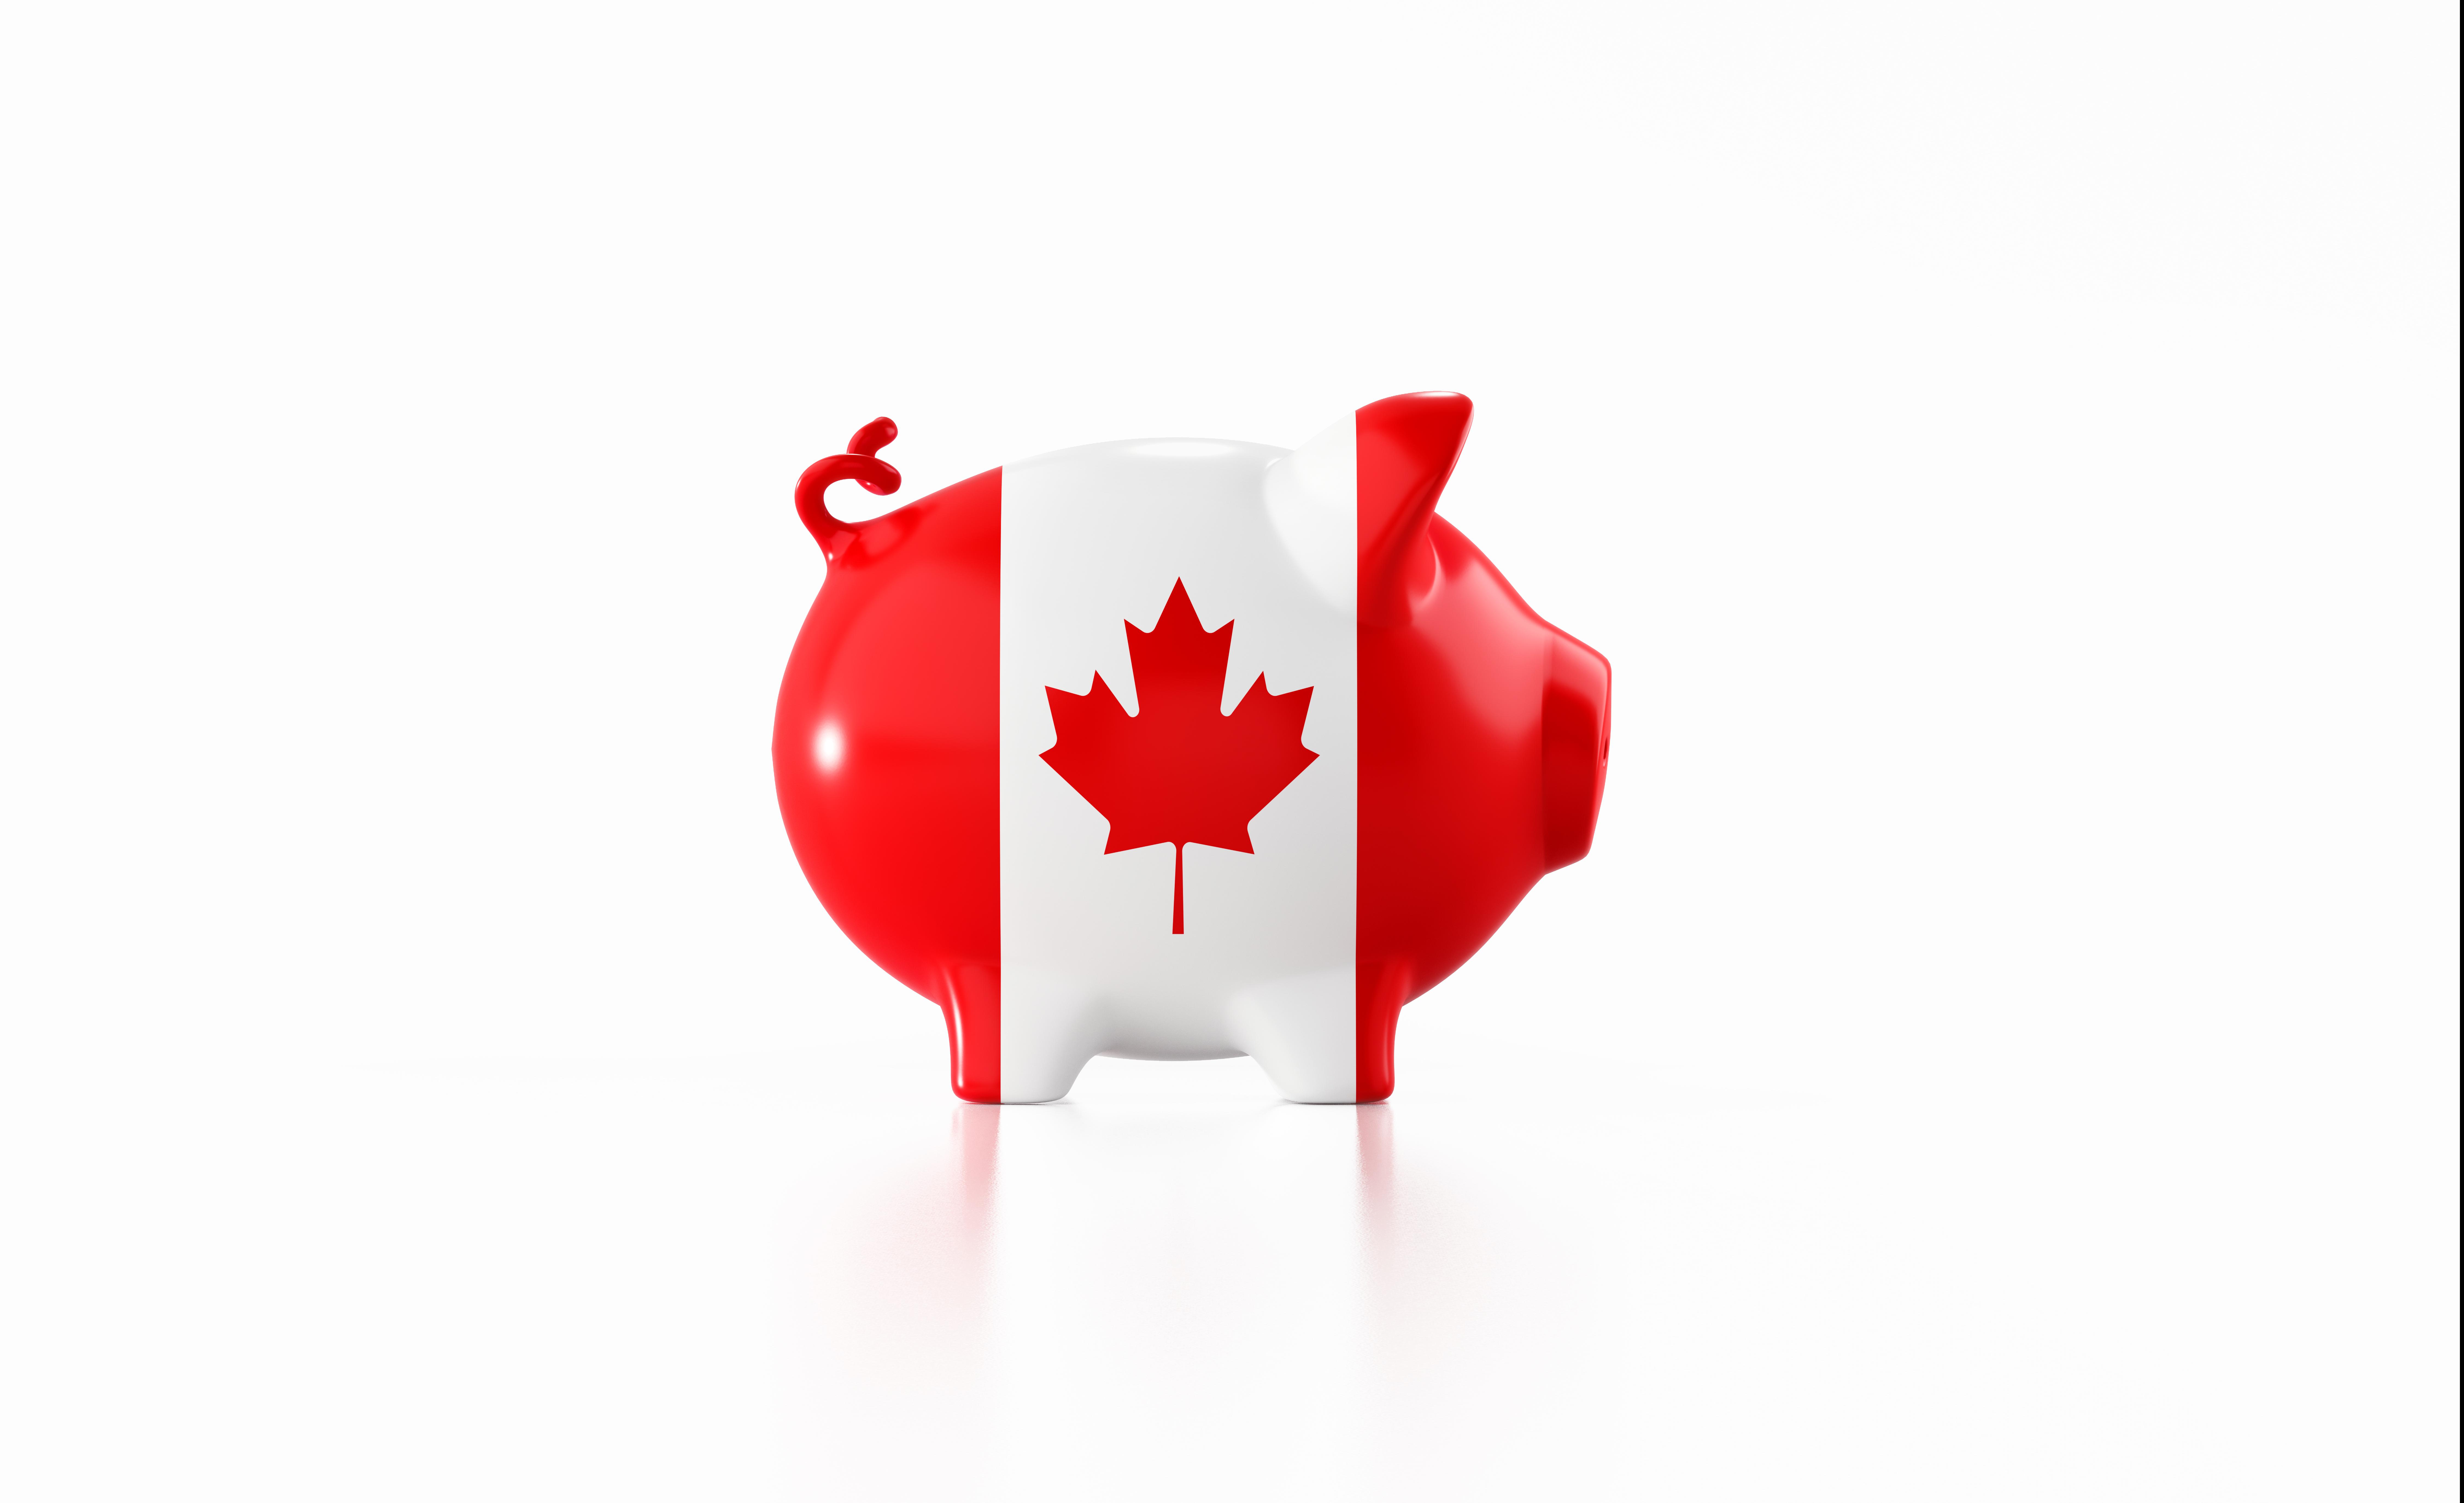 Piggybank with Canadian flag